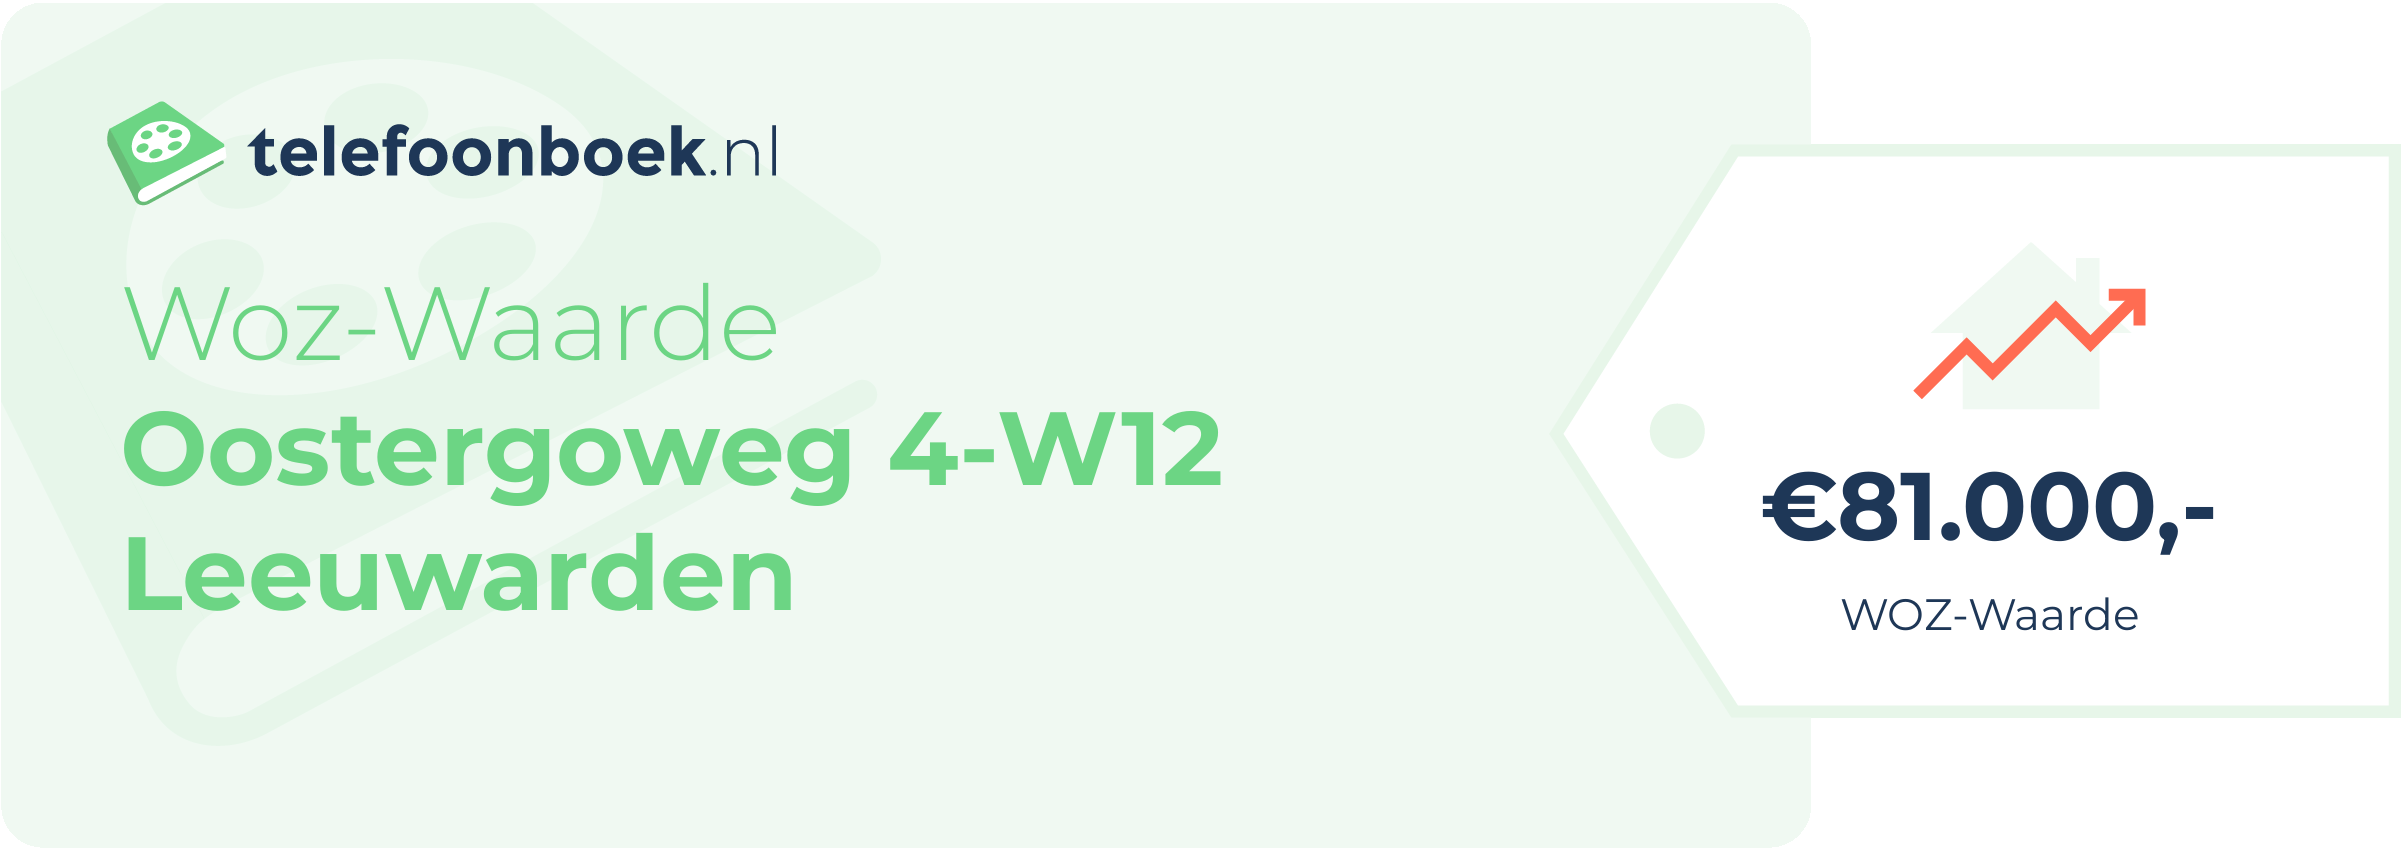 WOZ-waarde Oostergoweg 4-W12 Leeuwarden